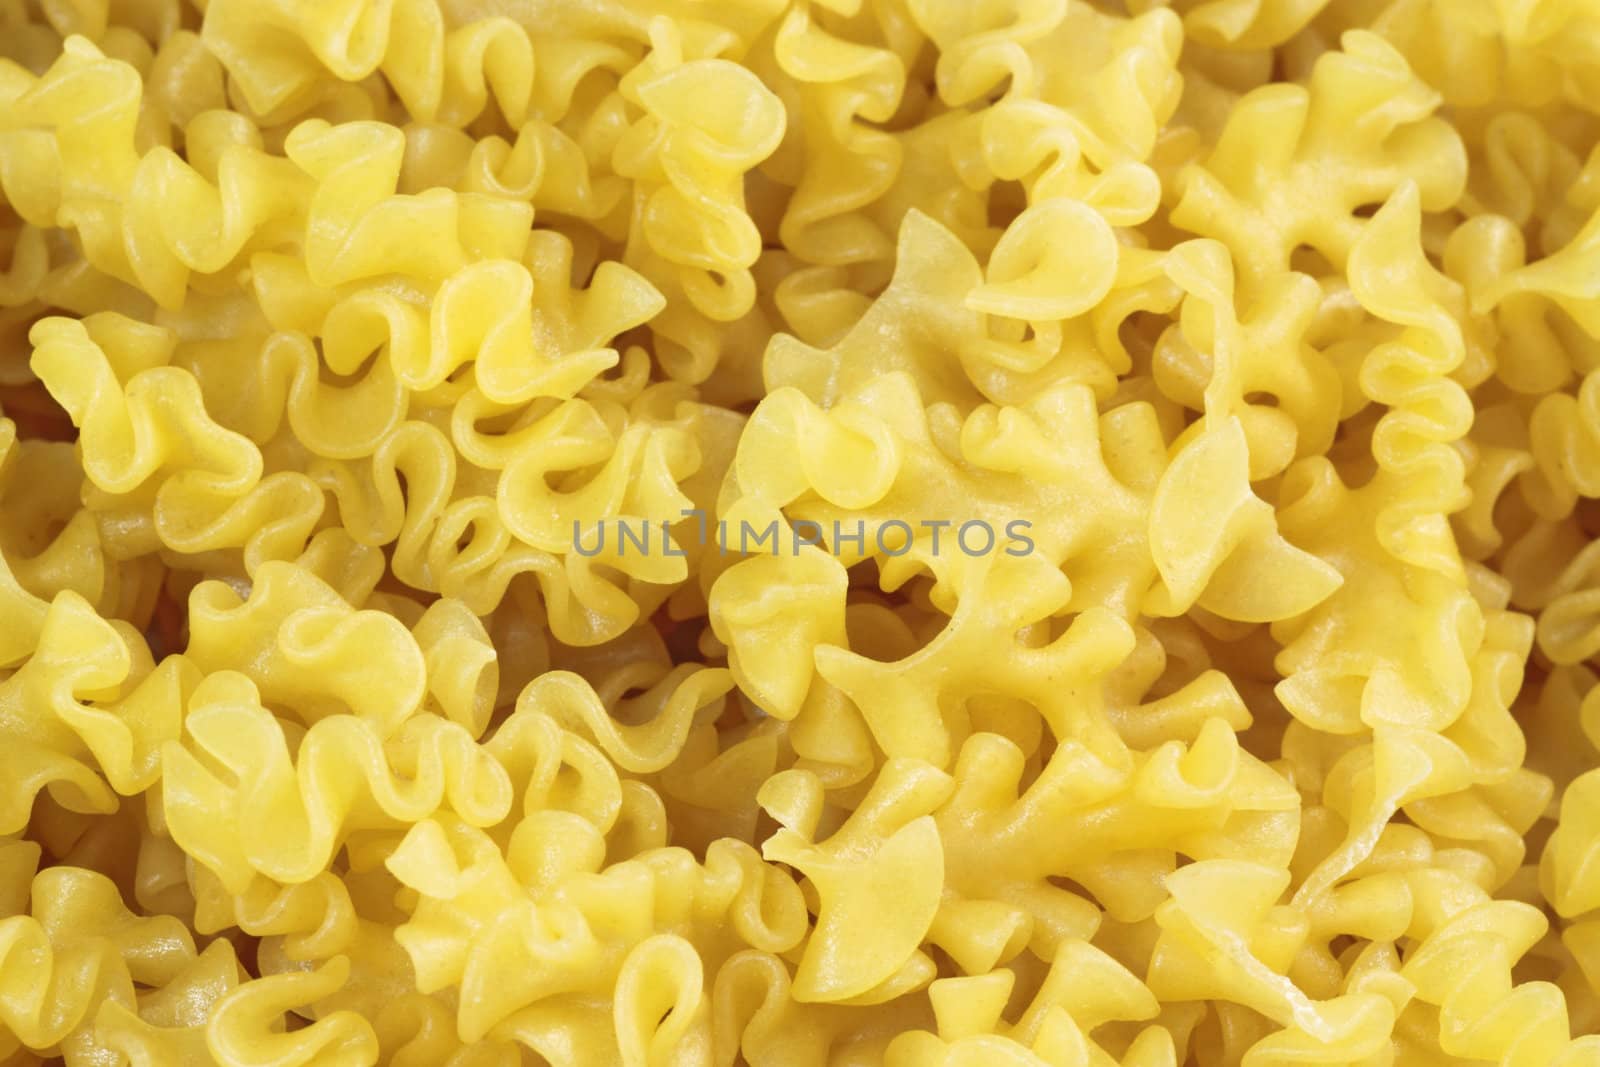 Uncooked noodles by Colour